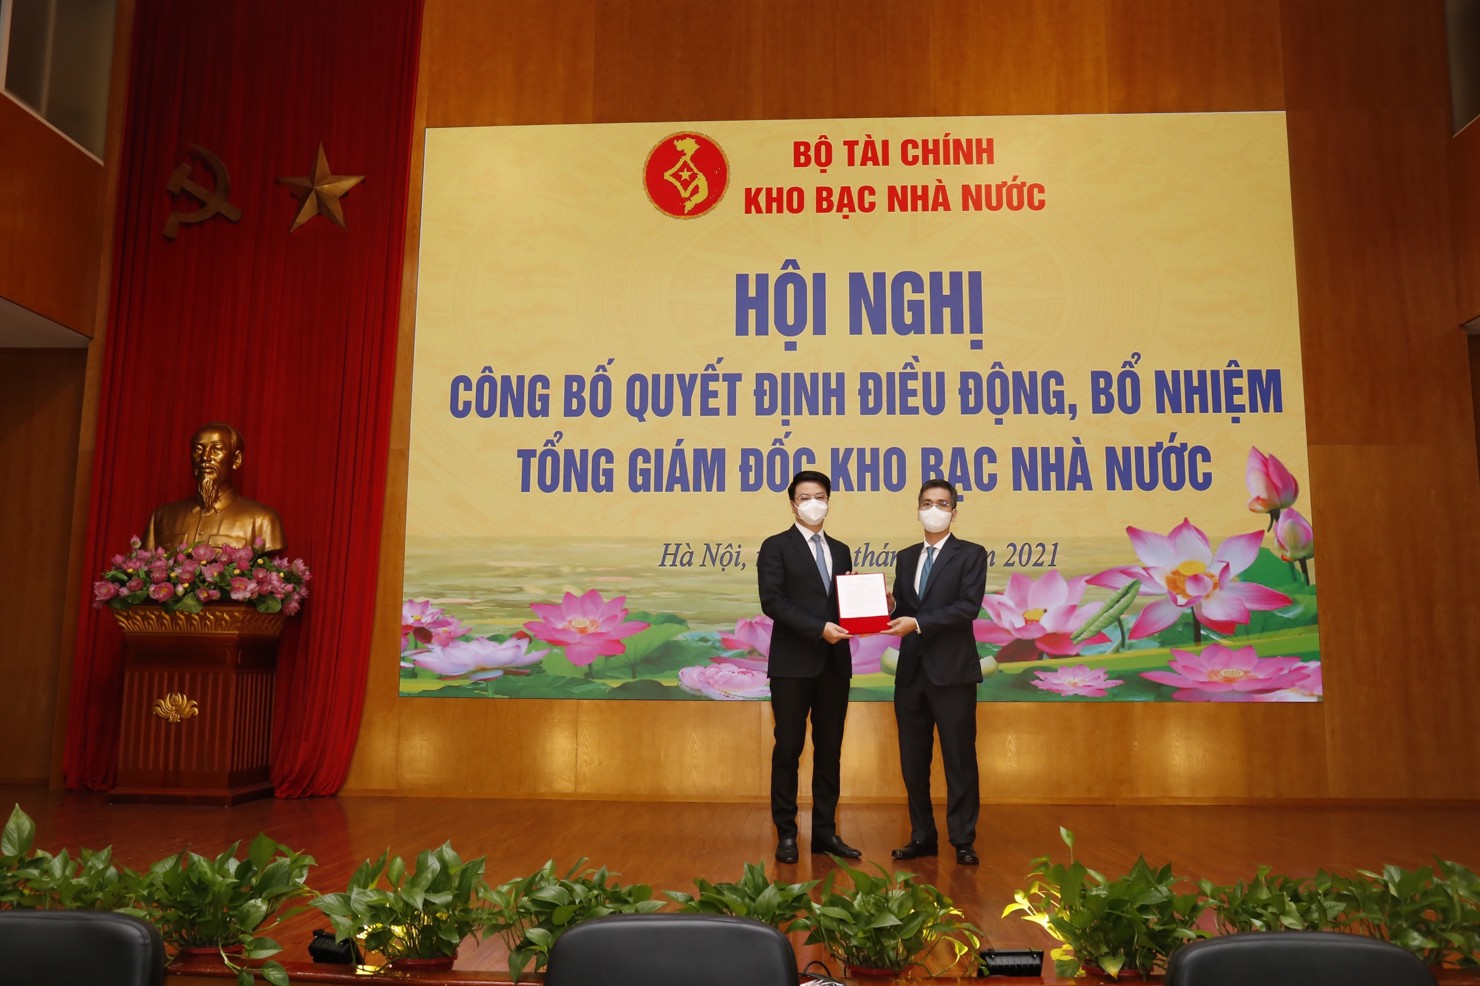 Thứ trưởng Bộ Tài chính Võ Thành Hưng (bên phải) trao quyết định điều động, bổ nhiệm cho tân Tổng giám đốc KBNN Trần Quân. Nguồn: KBNN